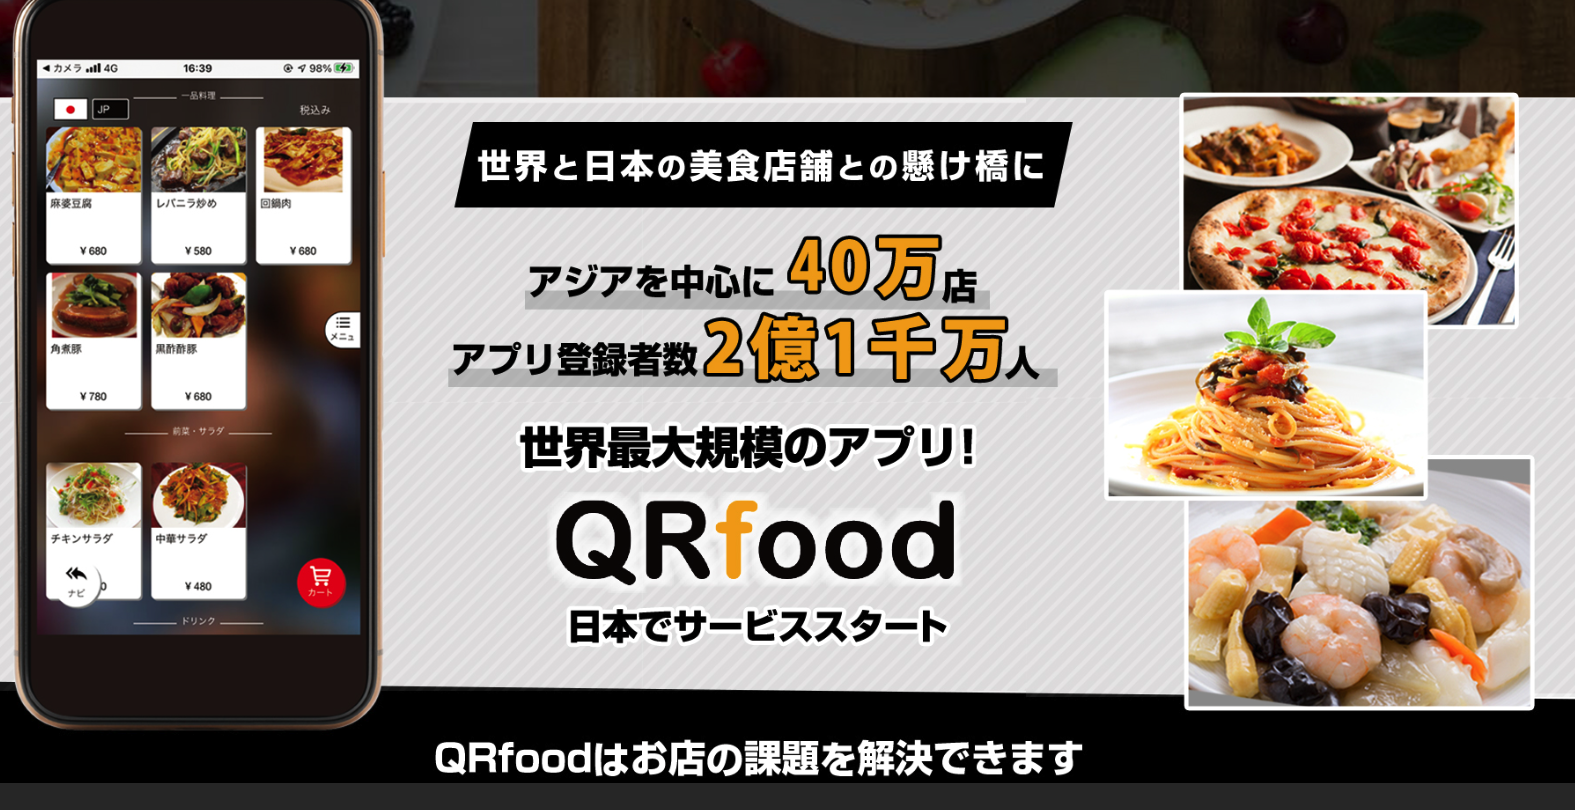 【飲食店向け】業界最大規模のQRコード型セルフオーダーシステム/QRfood